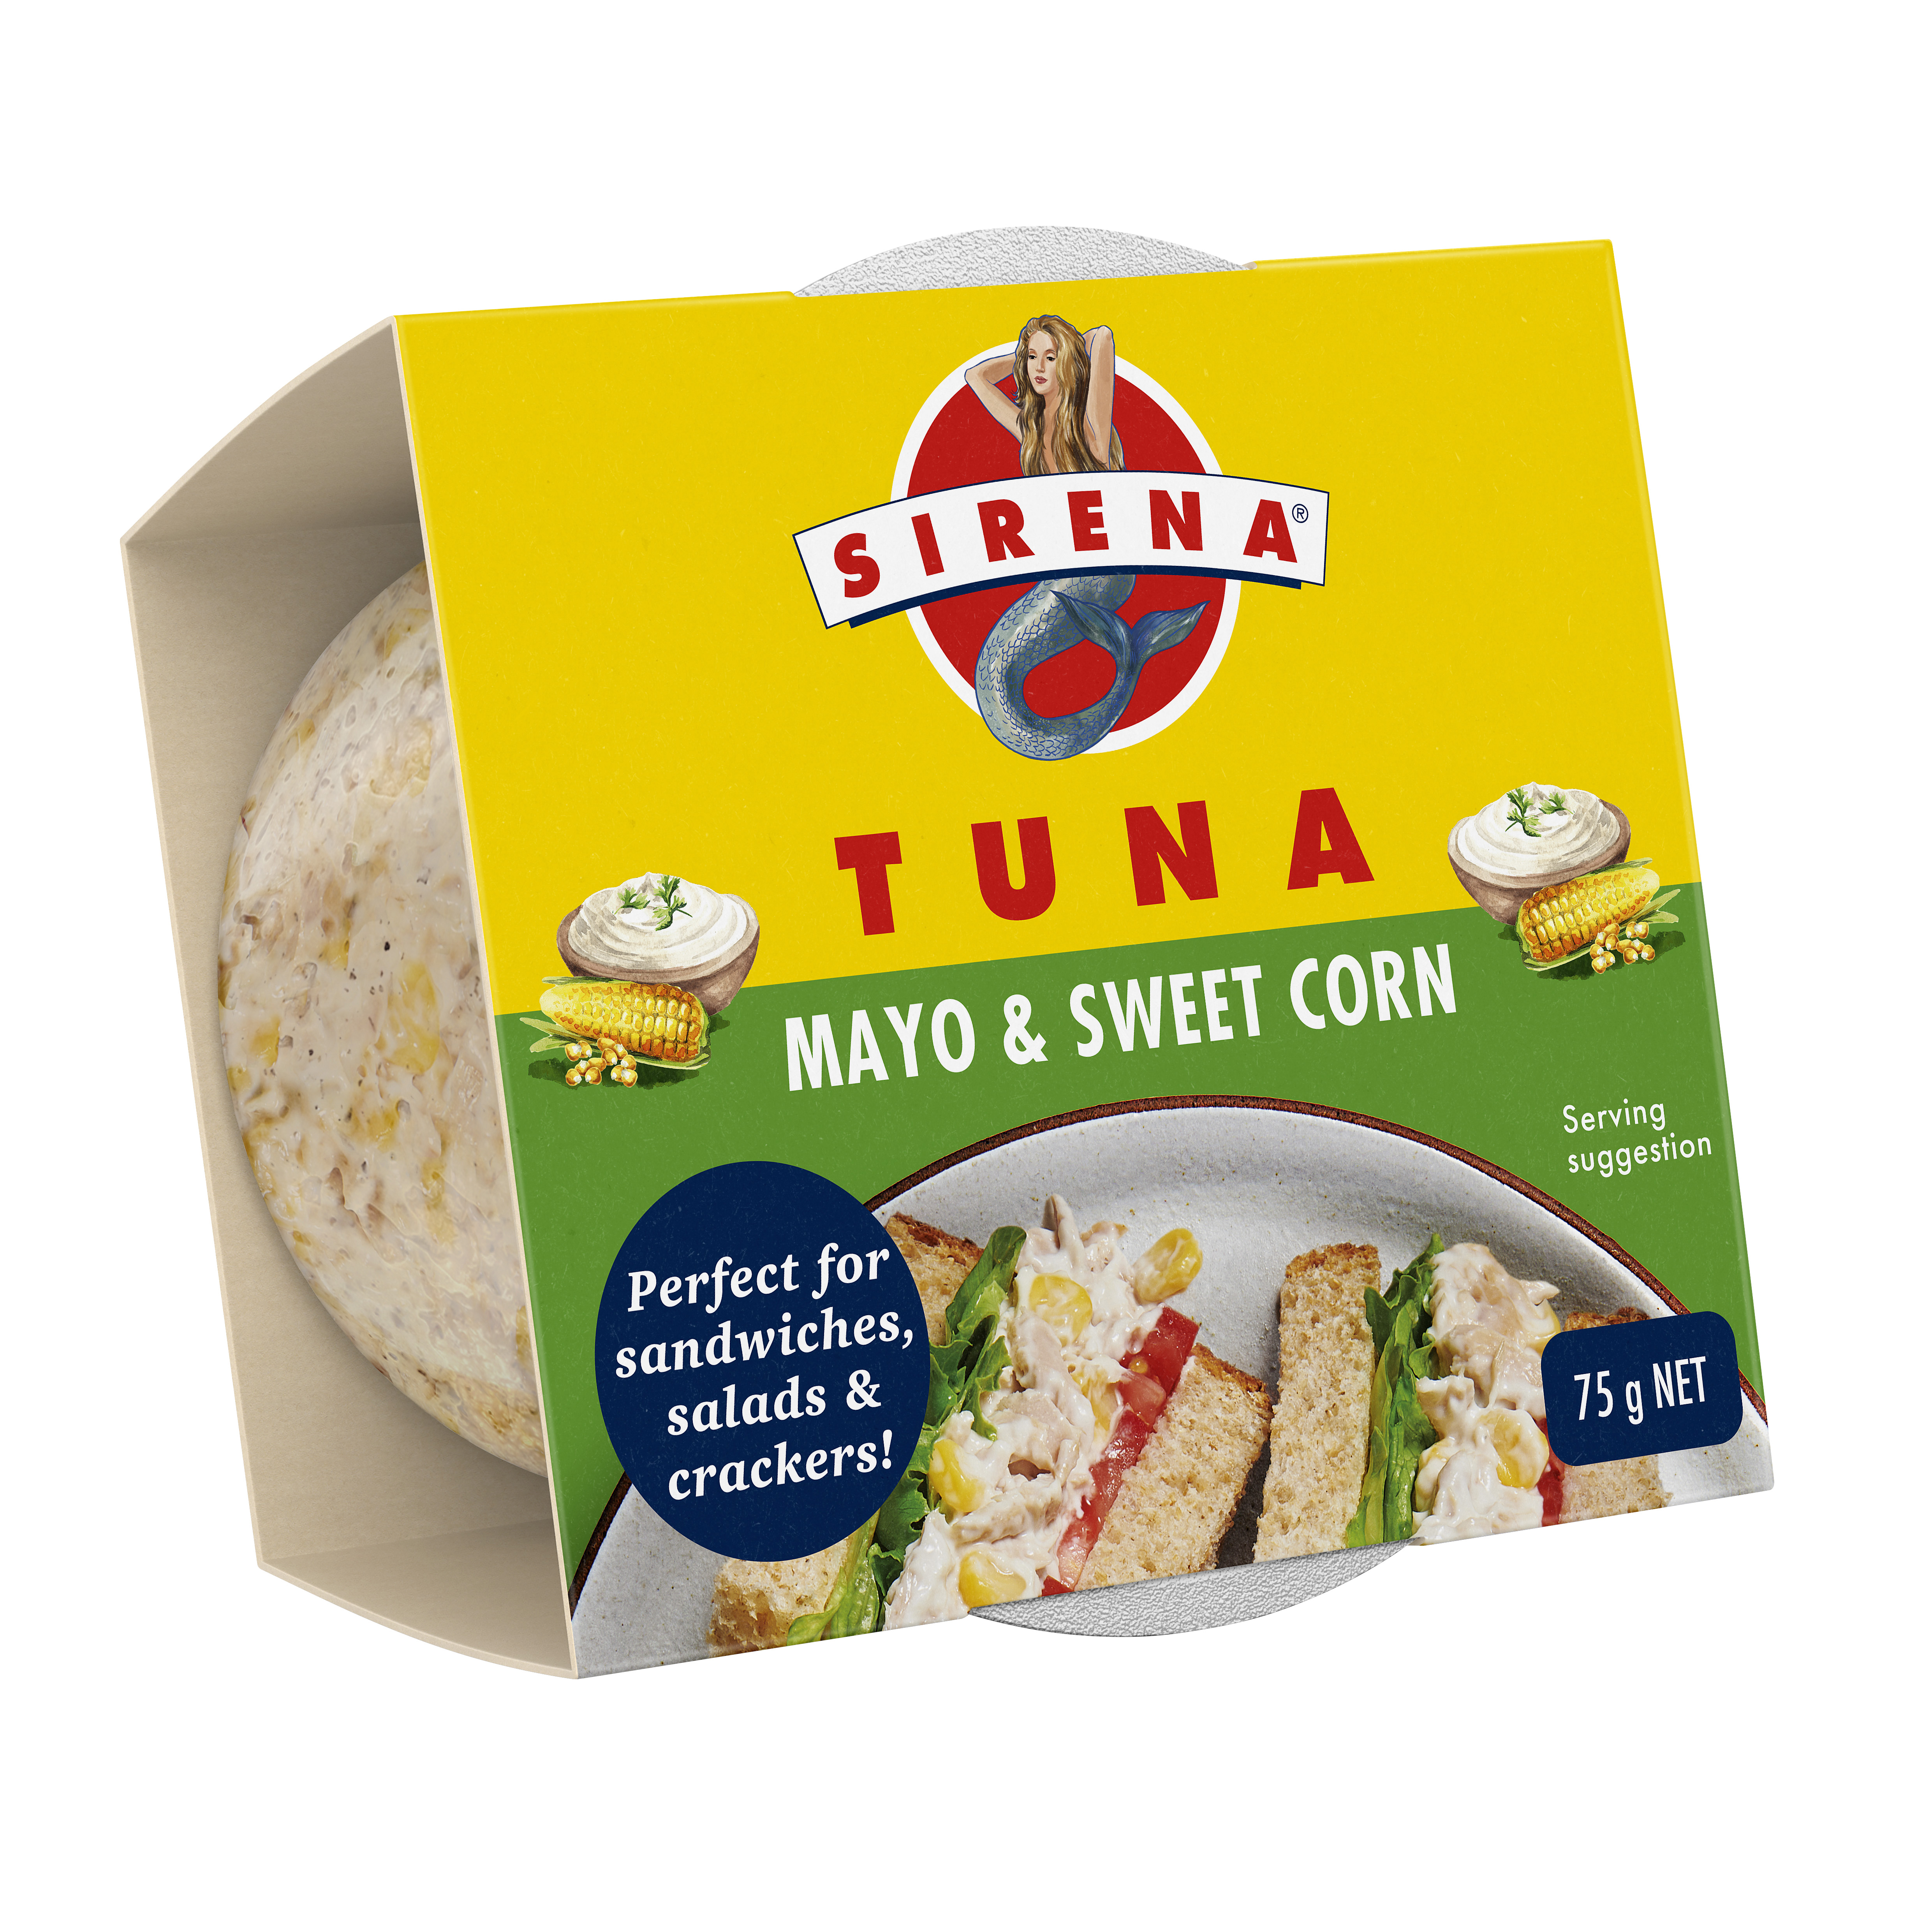 Sirena Tuna Mayo & Sweet Corn